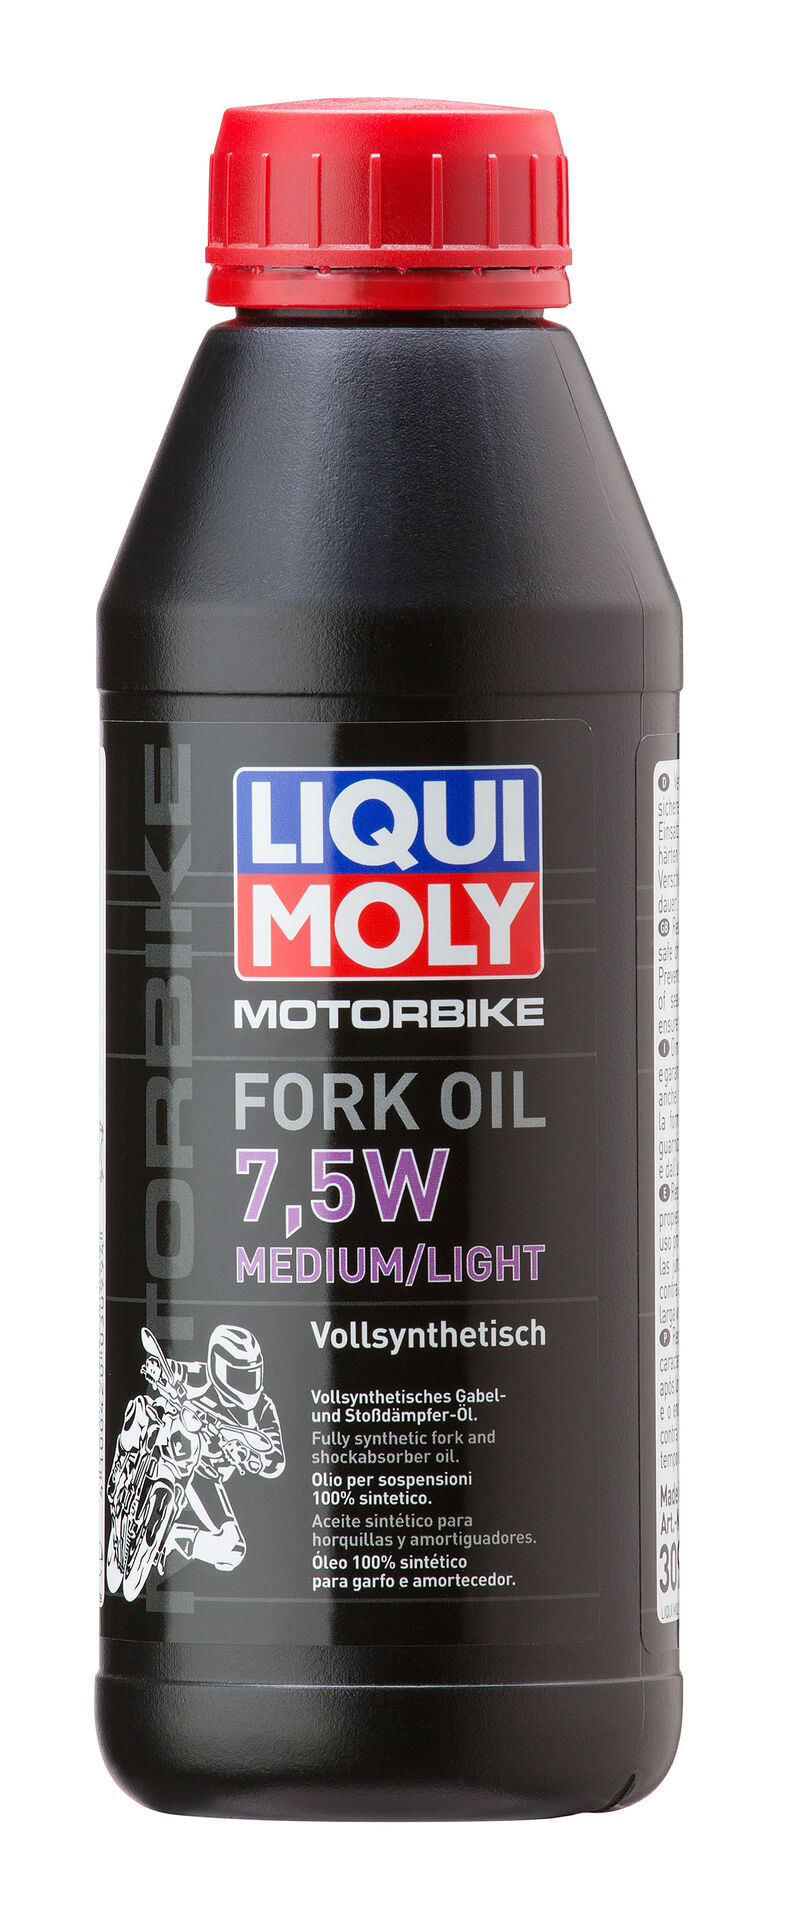 Liqui Moly Motorbike Fork Oil 7,5W medium light Motorrad Stoßdämpferöl 500ml